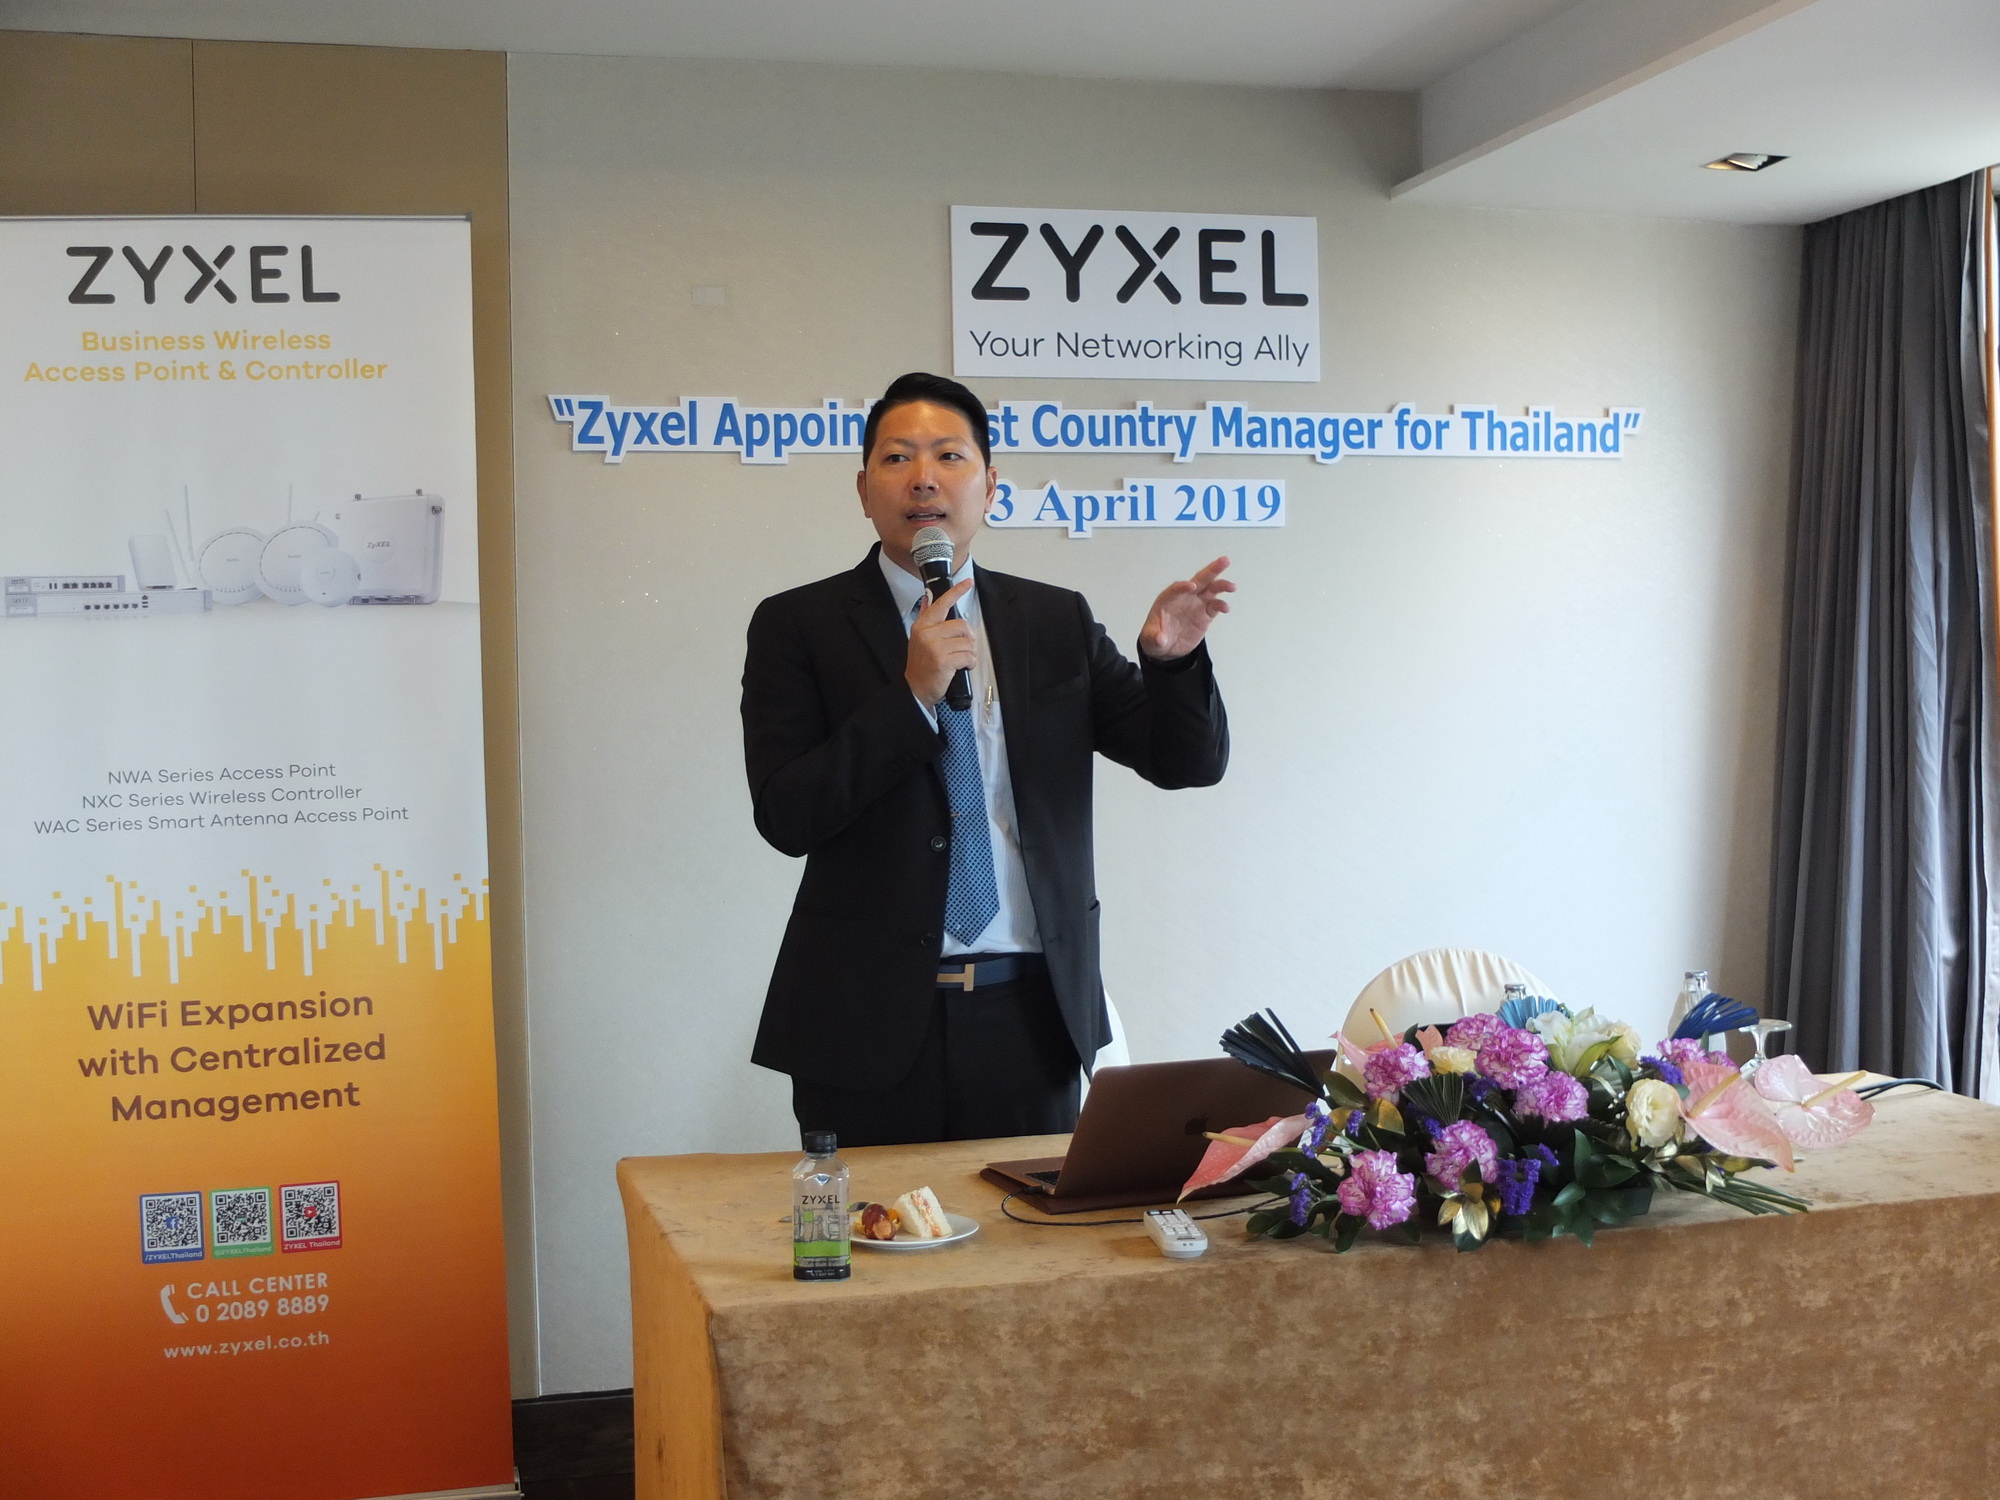 apichart at zyxle 1 ไซเซลประกาศเปิดตัวผู้จัดการประจำประเทศไทยคนแรก